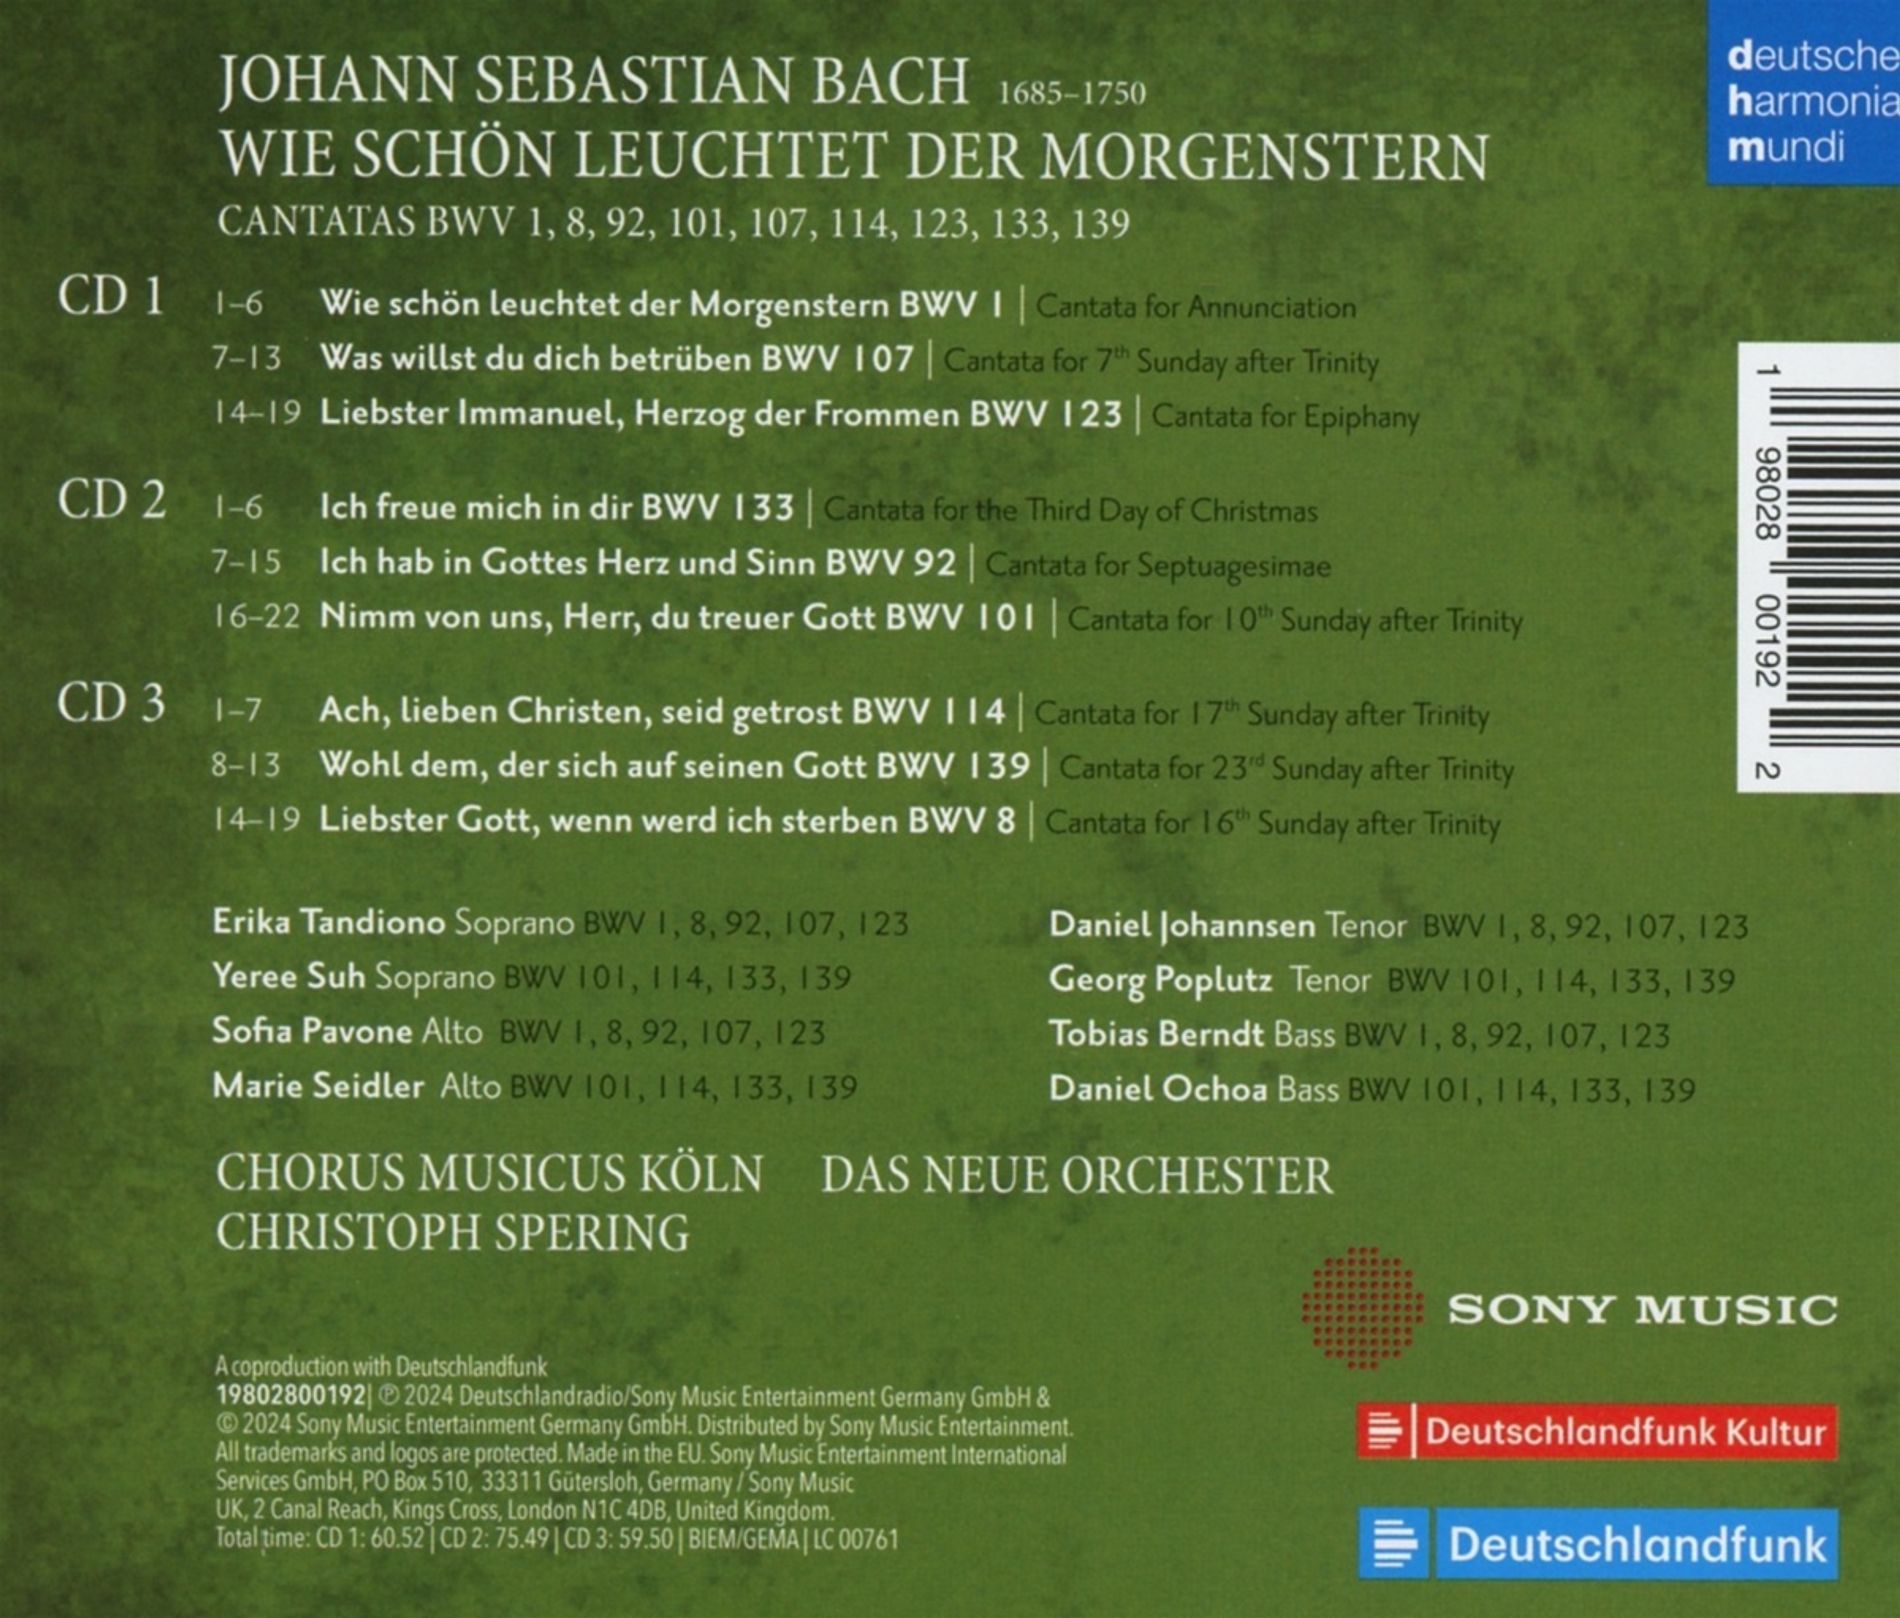 Bach: Wie Schon Leuchtet der Morgenstern | Chorus Musicus Koln, Das Neue Orchester, Christoph Spering